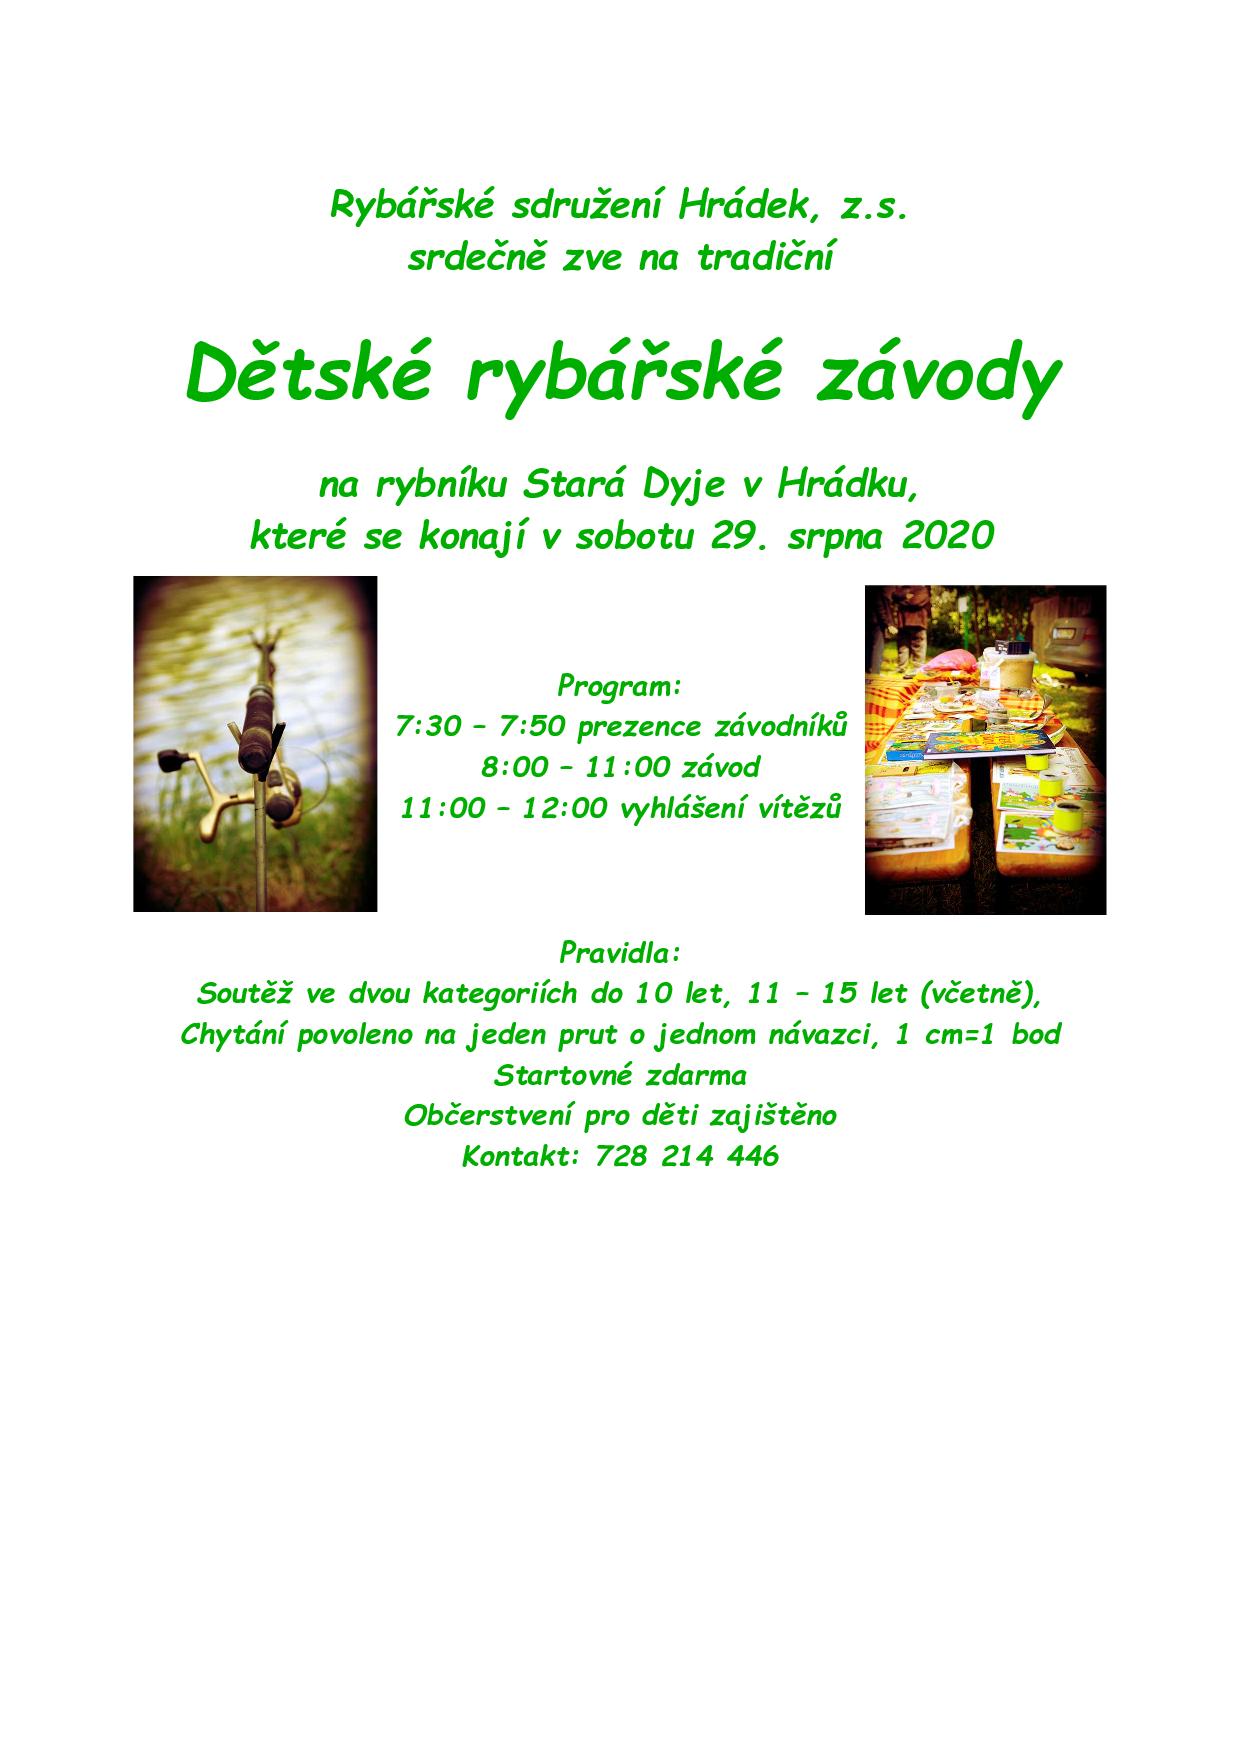 pozvanka_zavody_Hradek_2020-page-001.jpg